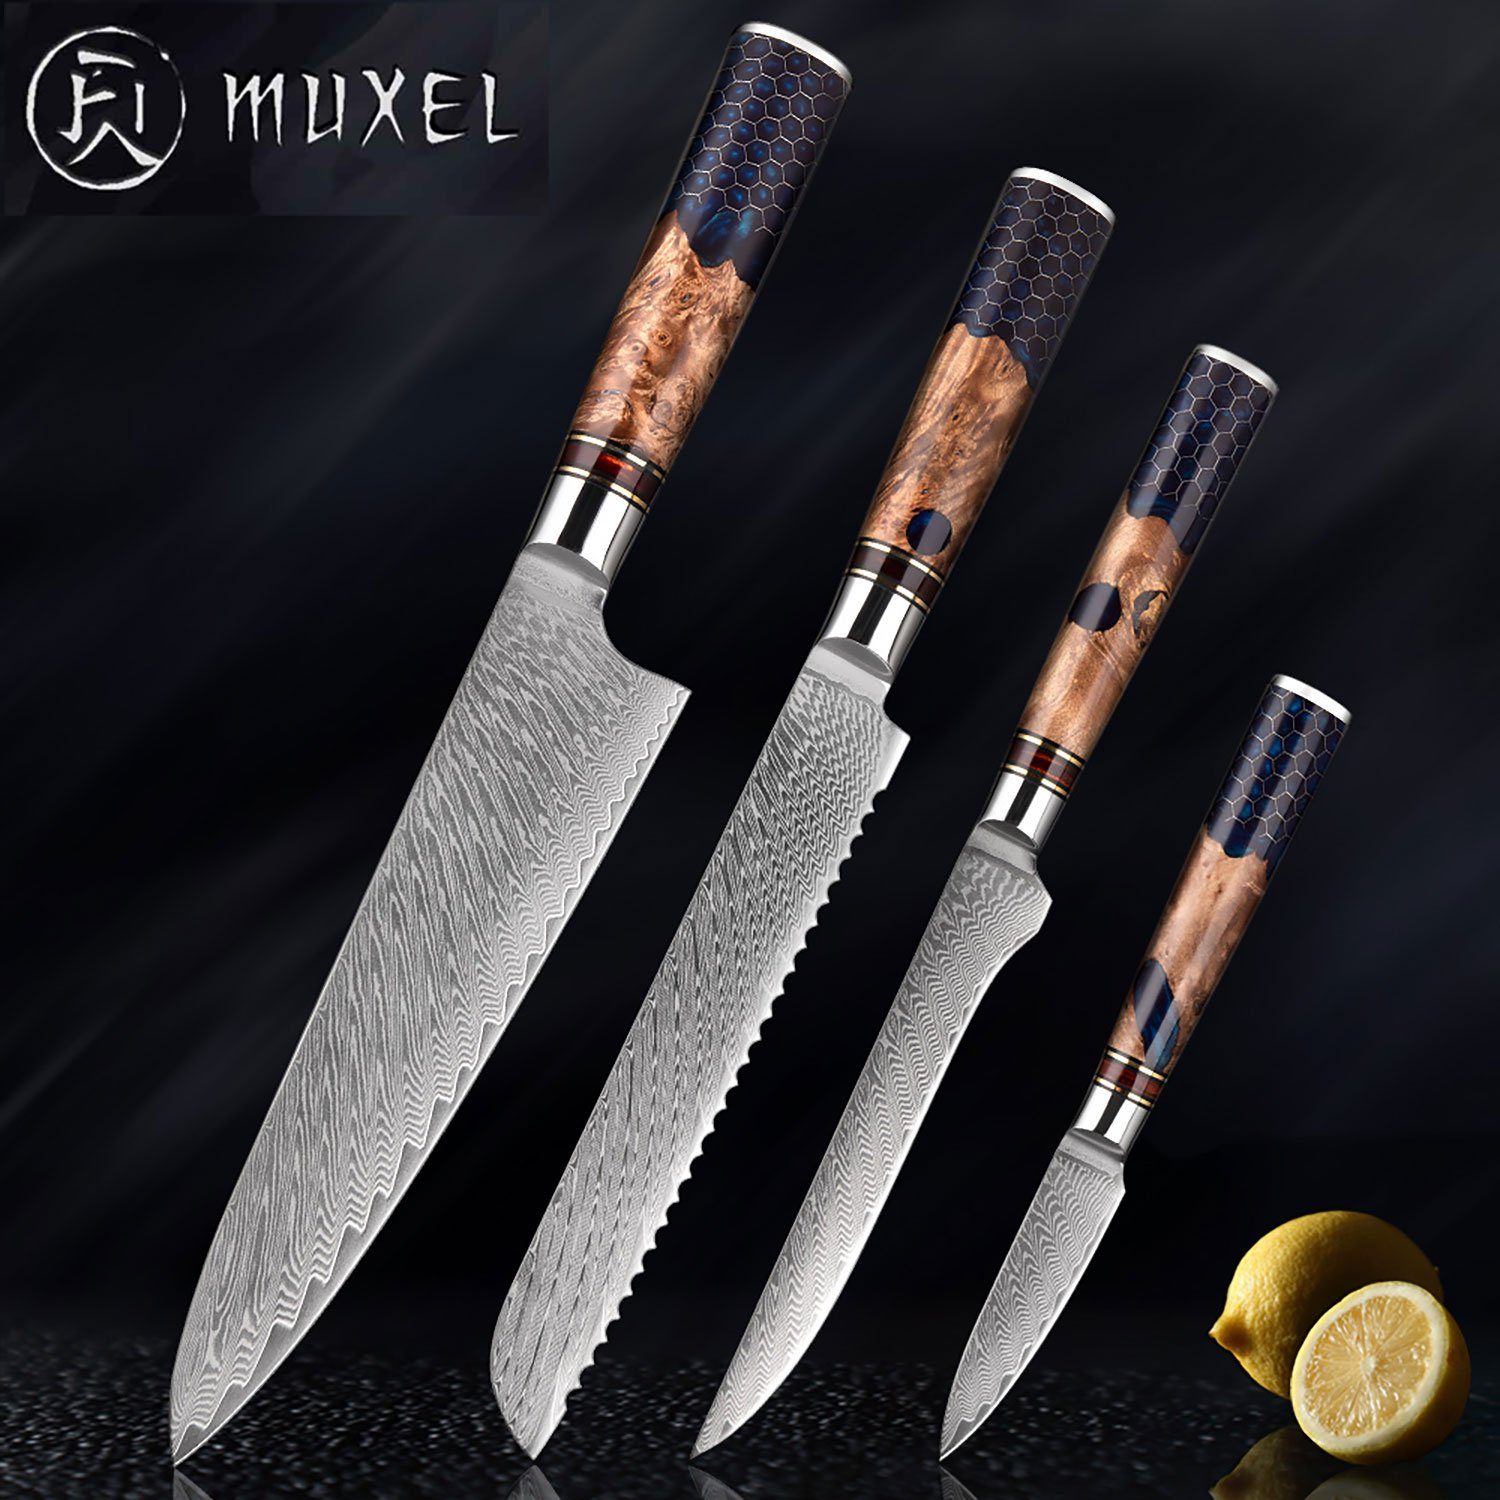 Damastmesser Messer Muxel Kochmesser Messer Unikat 4-Teiliges Jedes Brotmesser Ausbeinmesser, ein Damast Set.